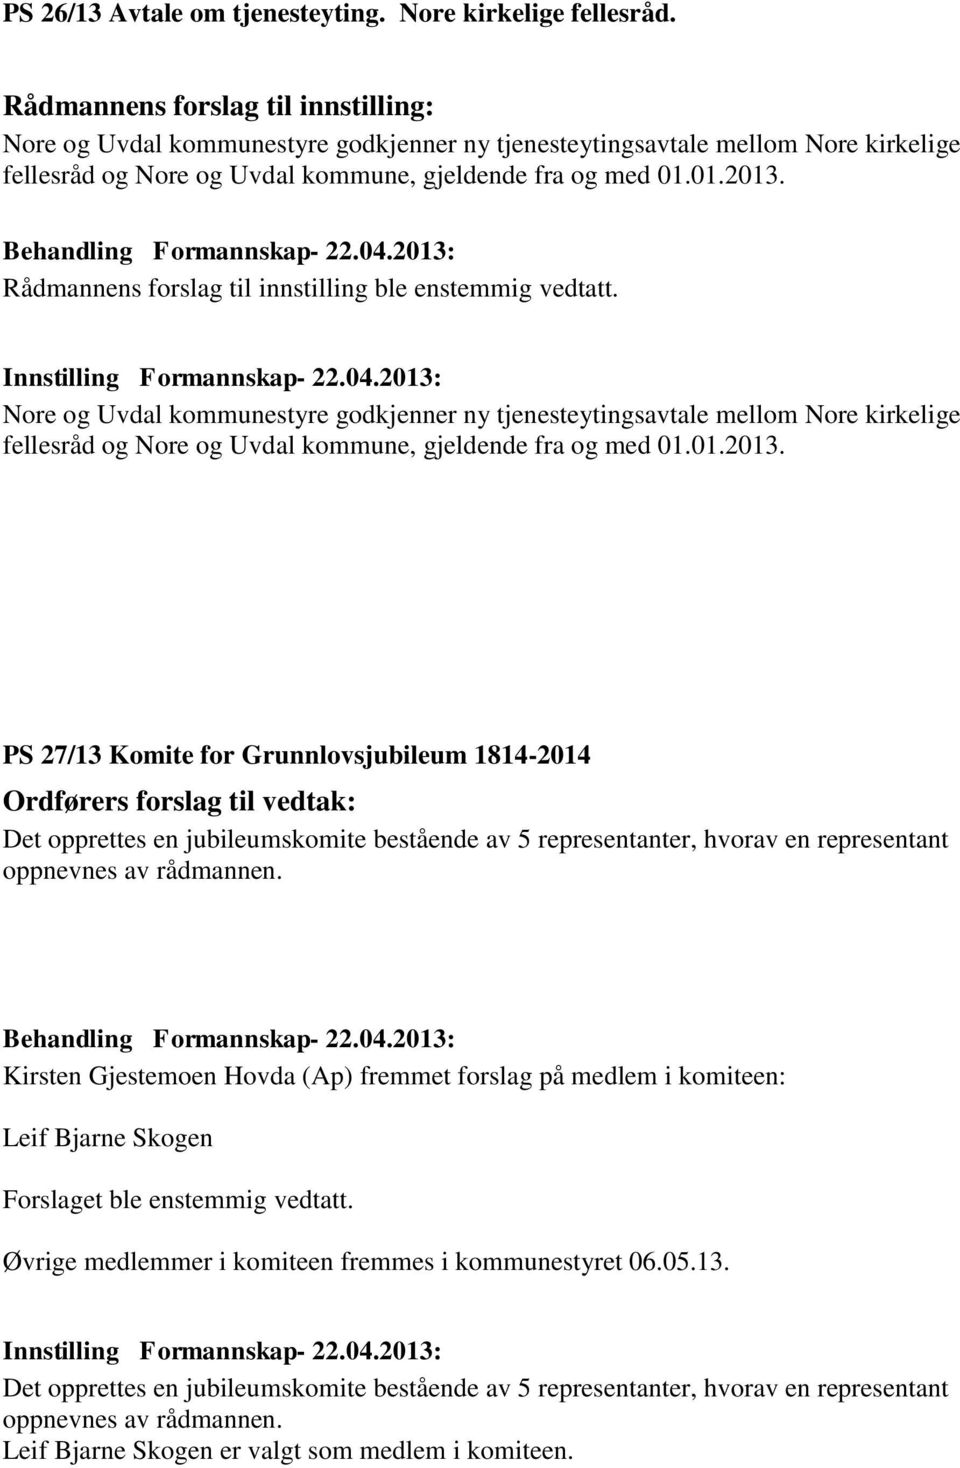 PS 27/13 Komite for Grunnlovsjubileum 1814-2014 Ordførers forslag til vedtak: Det opprettes en jubileumskomite bestående av 5 representanter, hvorav en representant oppnevnes av rådmannen.